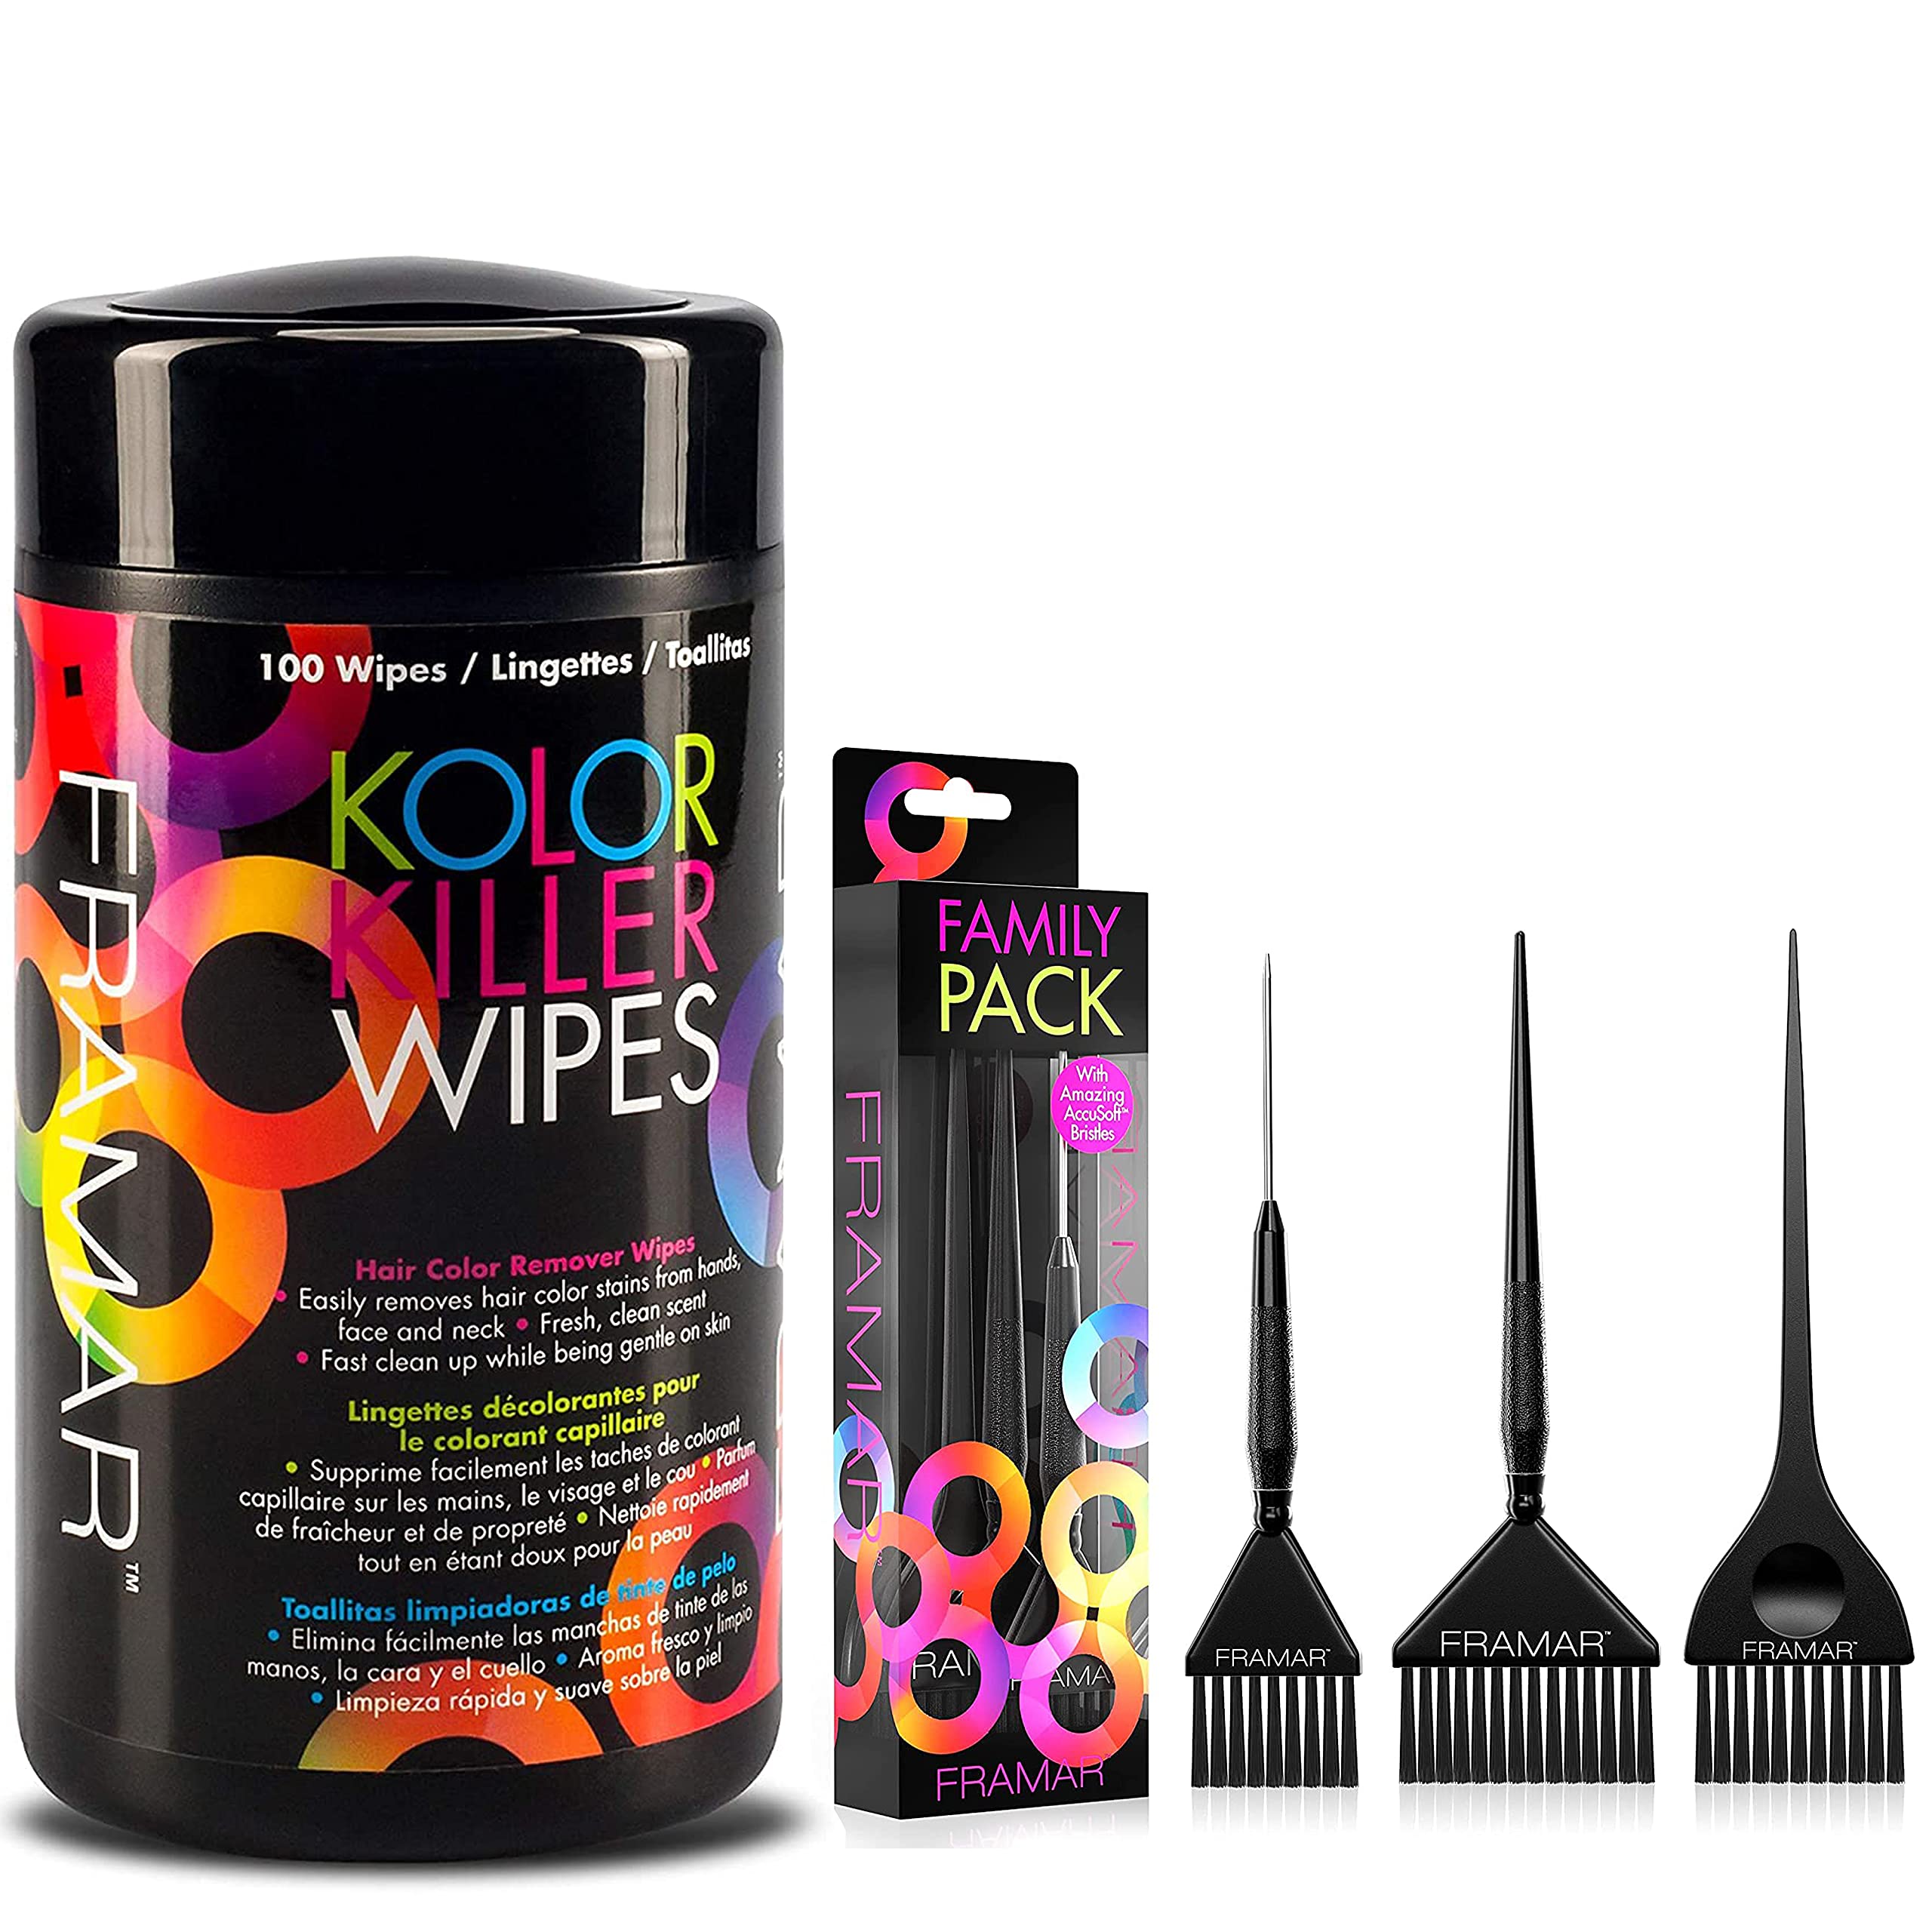 Framar Kolor Killer Wipes – Hair Dye Remover + Framar Family Pack Hair Color Brush Set